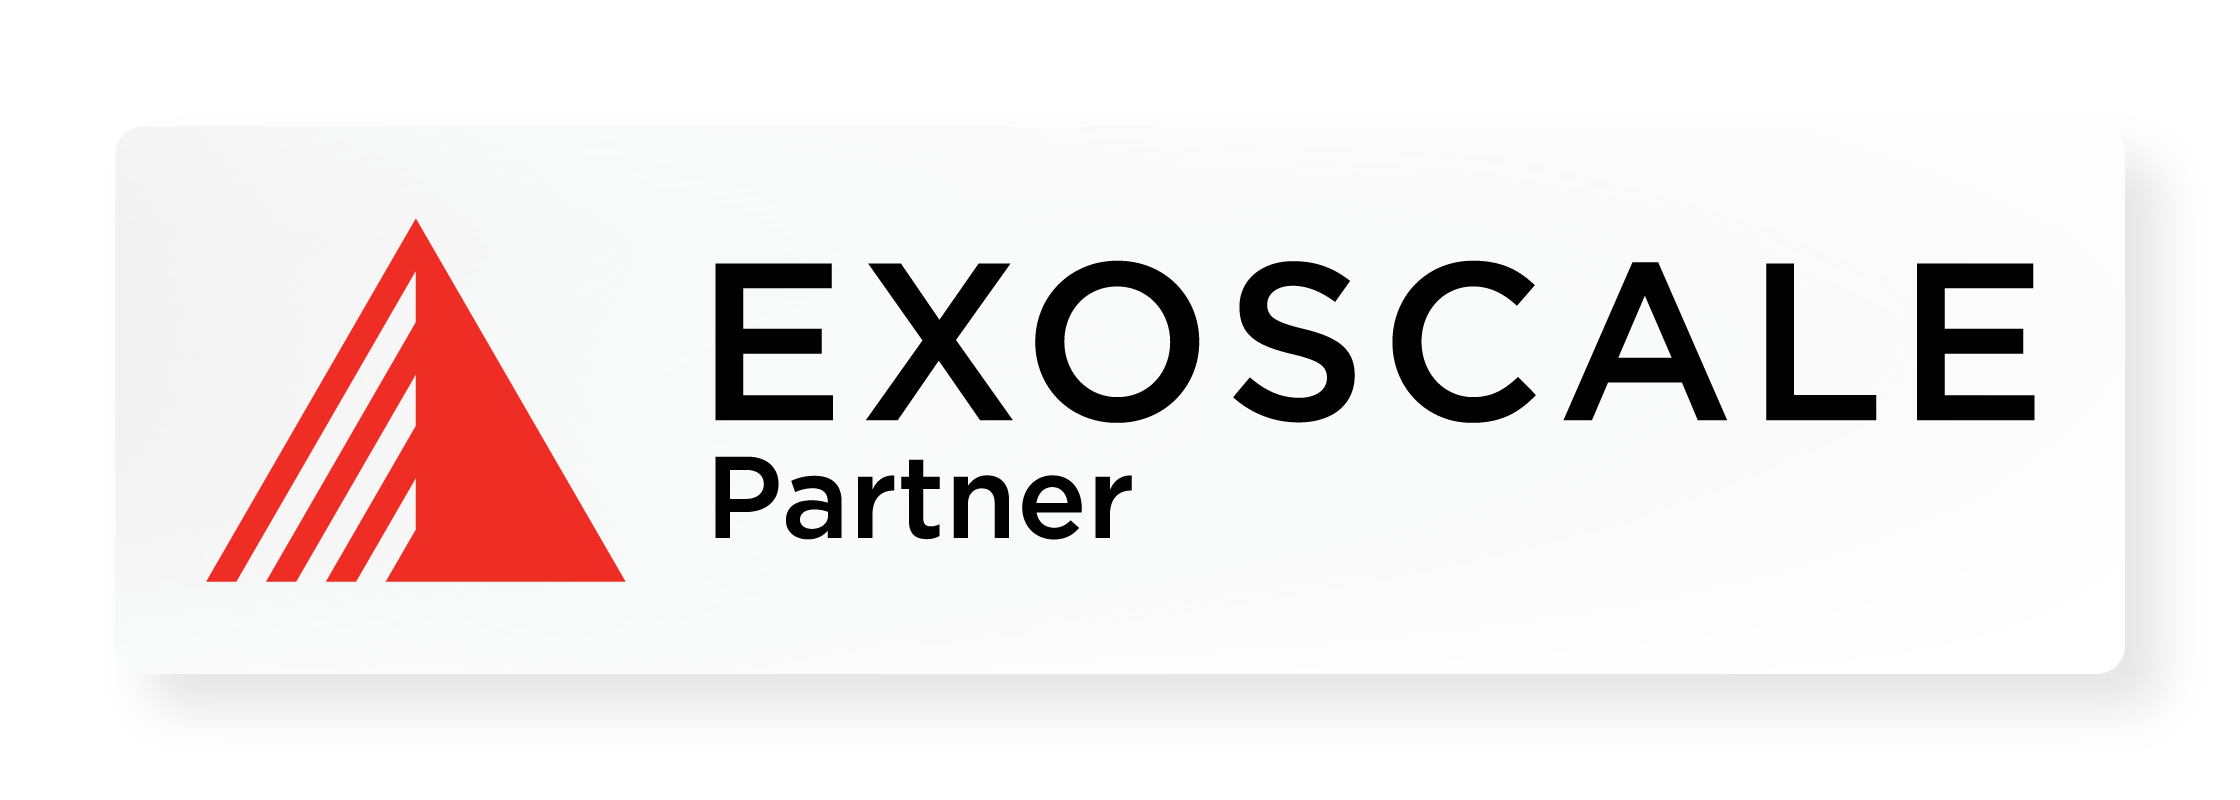 Exoscale Partner Logo